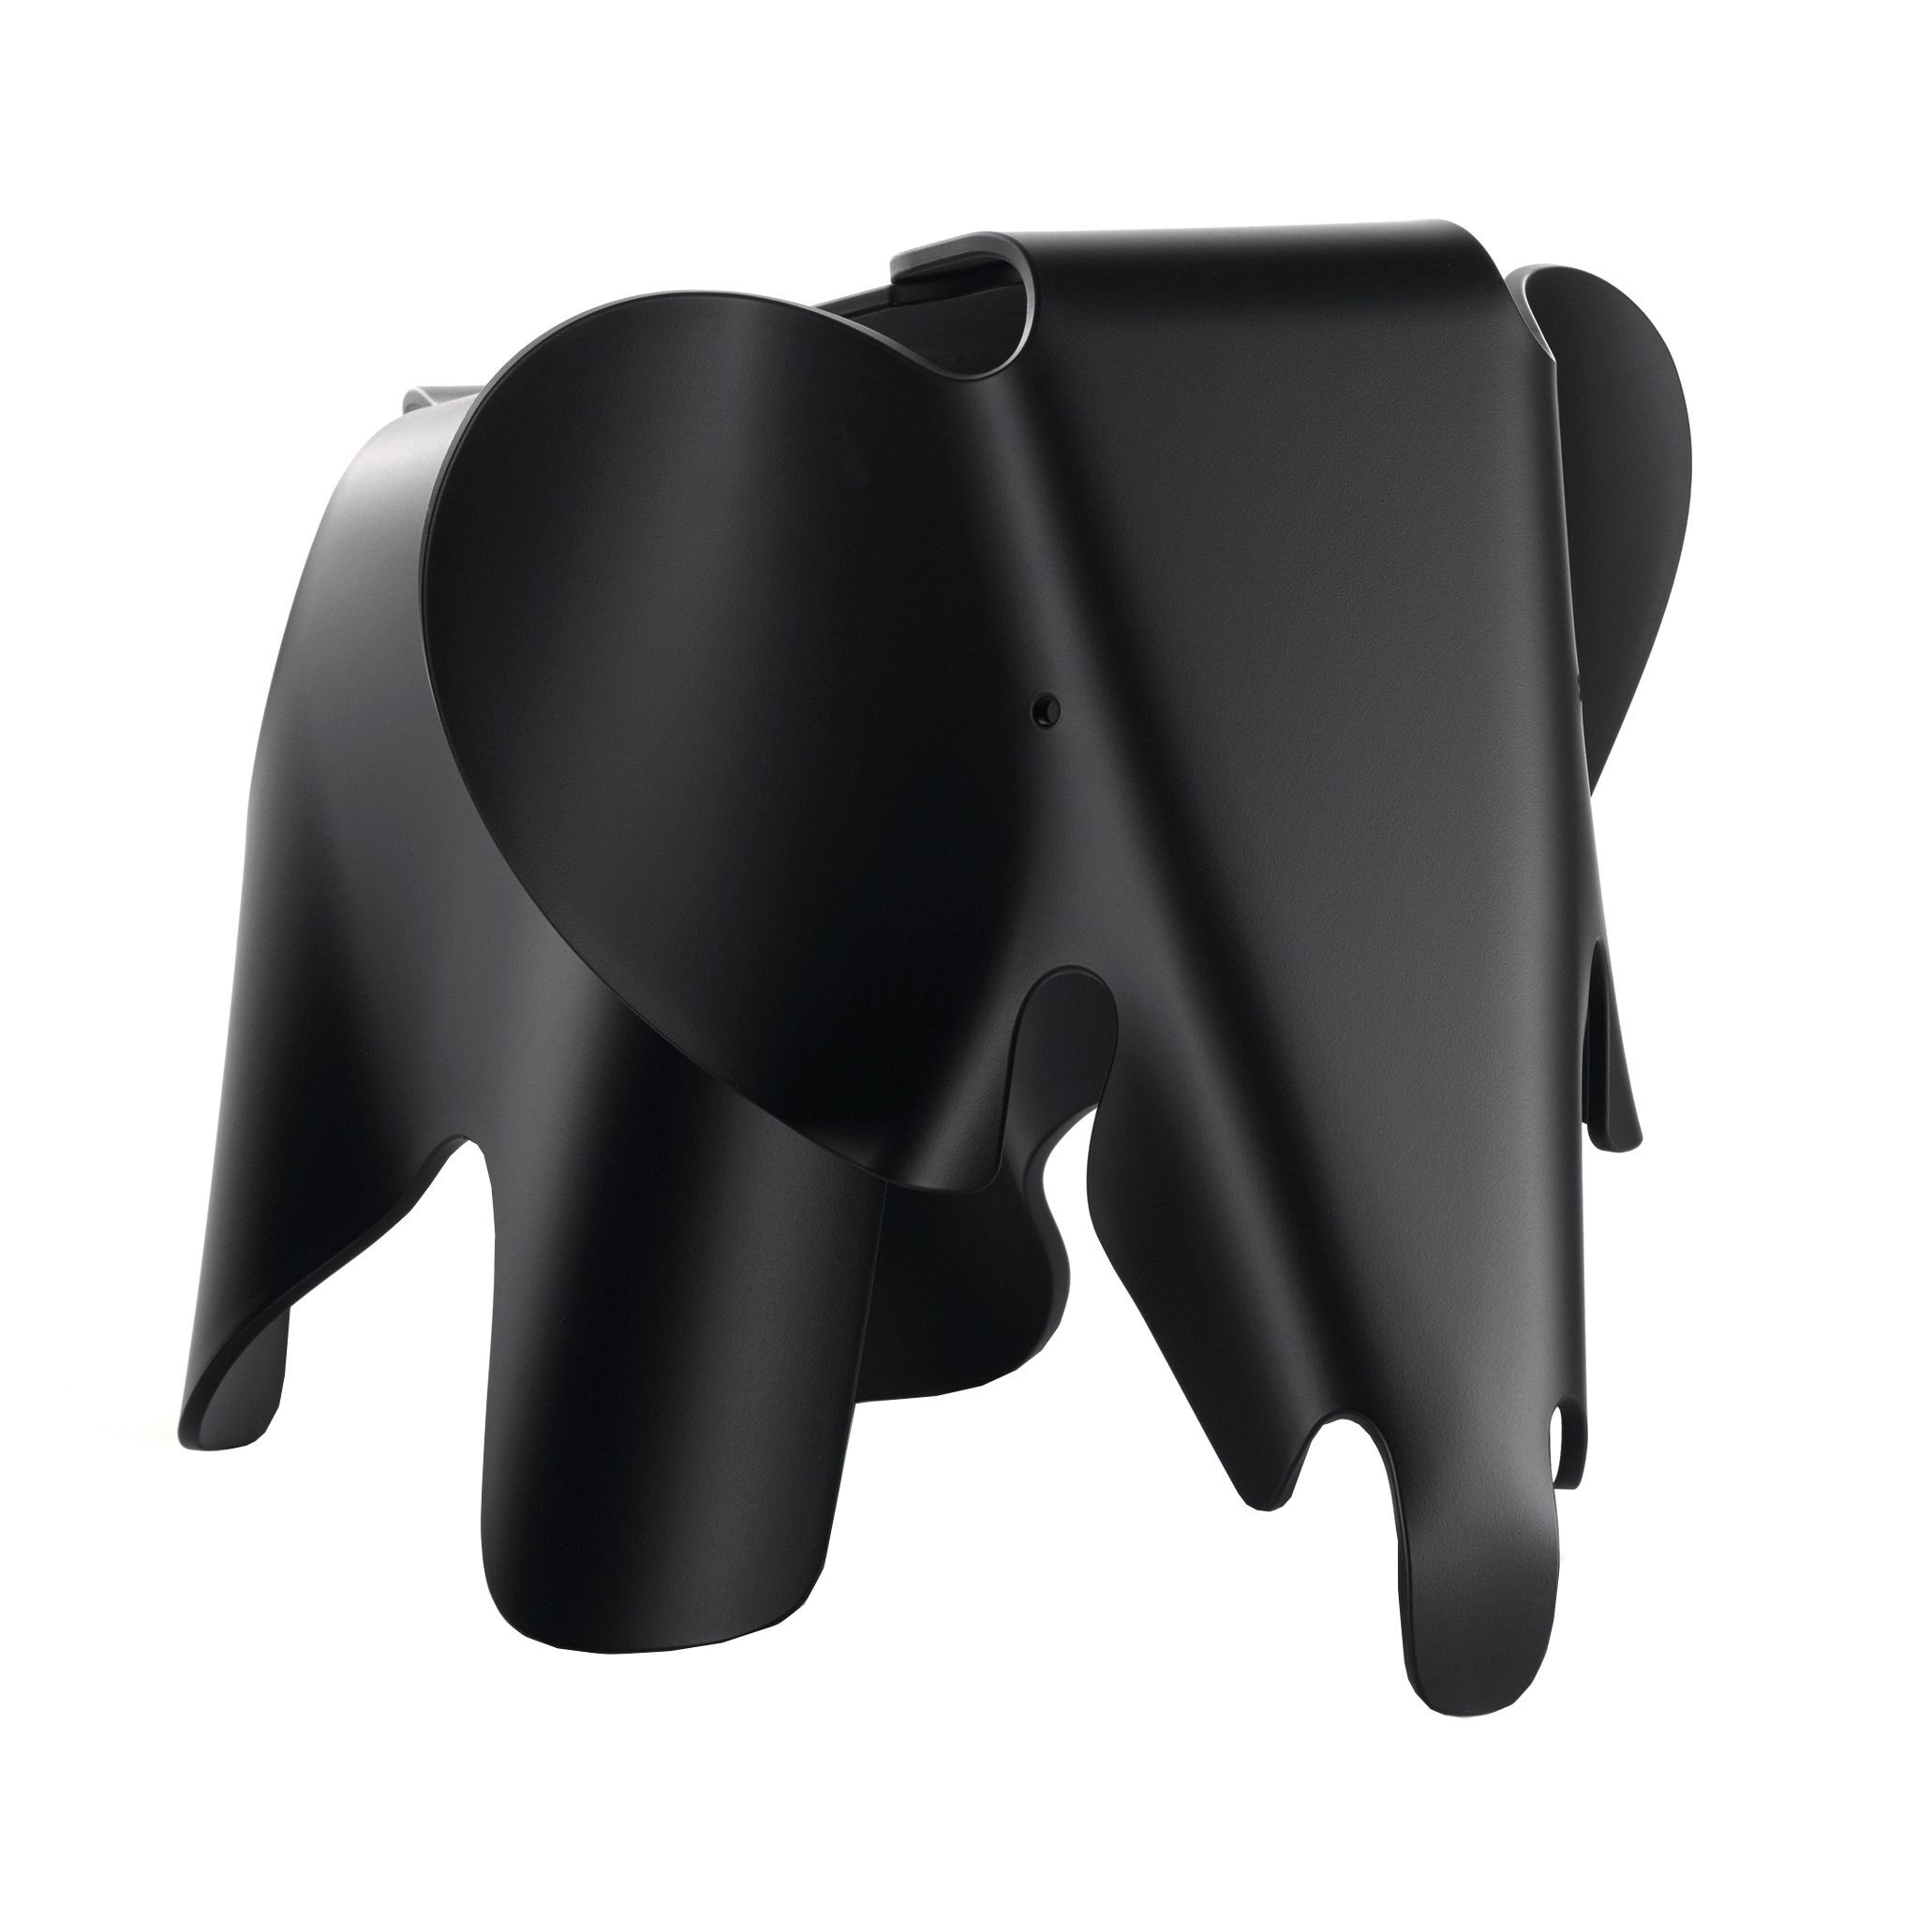 Vitra Eames Elephant collectors item small deep black